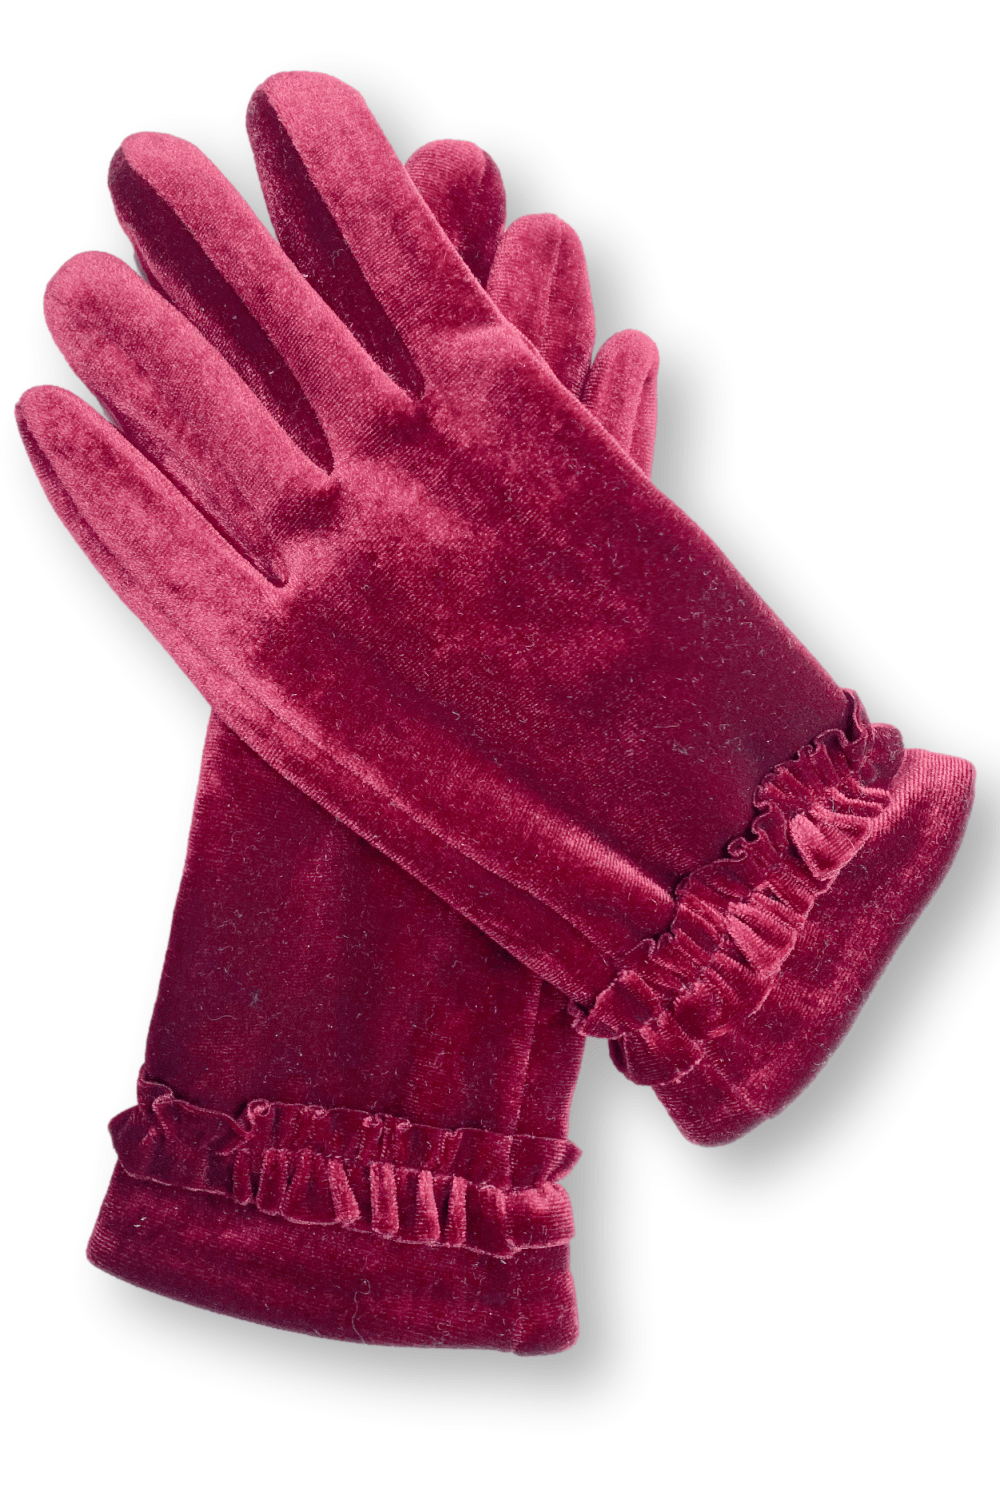 Cranberry Feminine velvet women's gloves with small wrist ruffle.